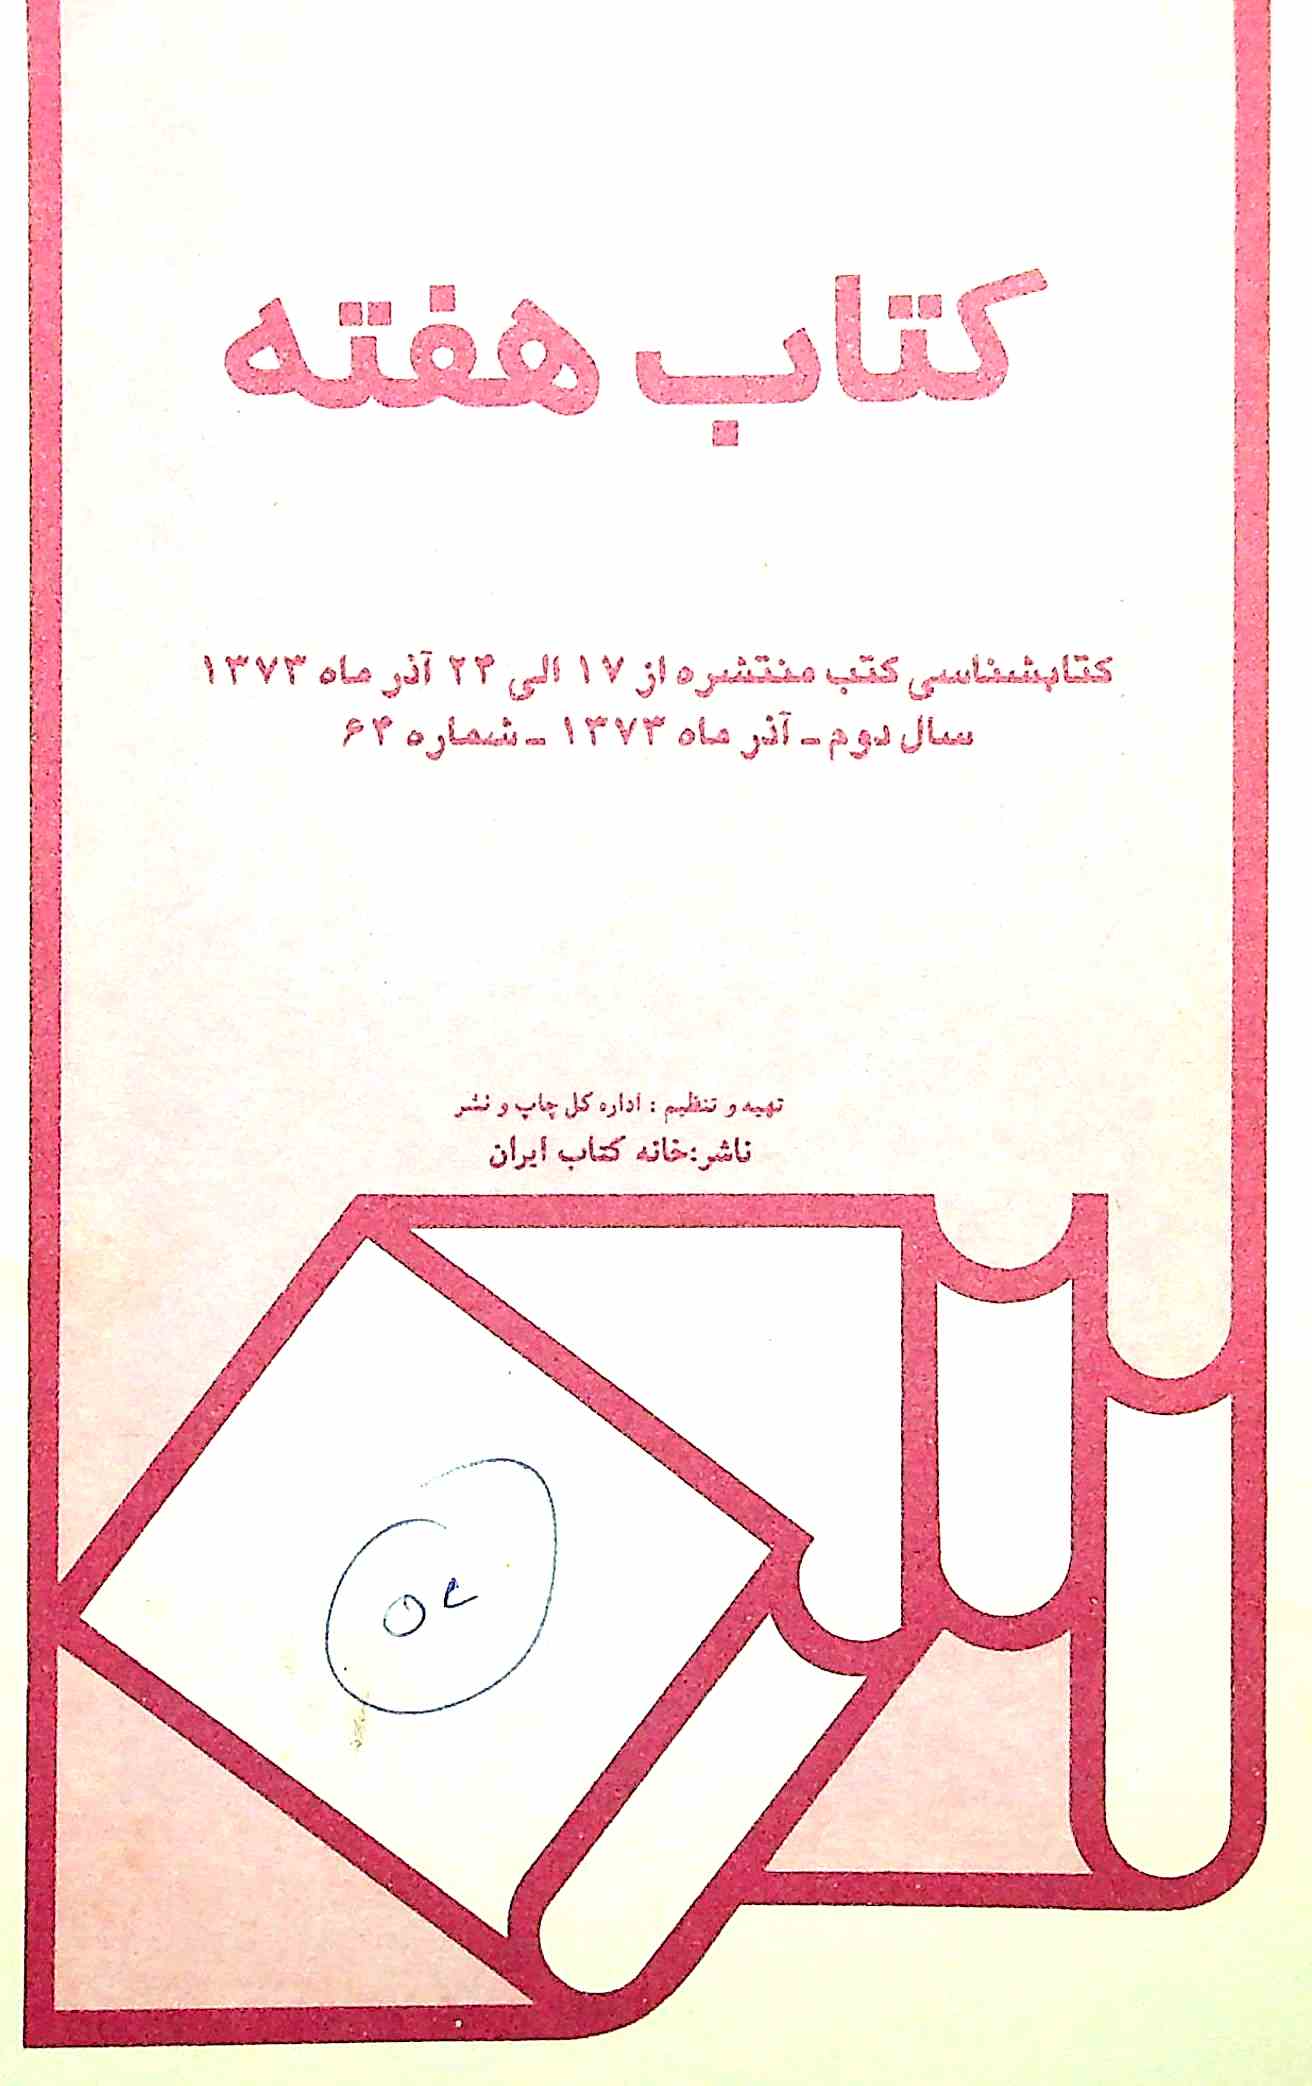 Kitab-e-haftah- Magazine by Khana-e-Kitab, Iran 